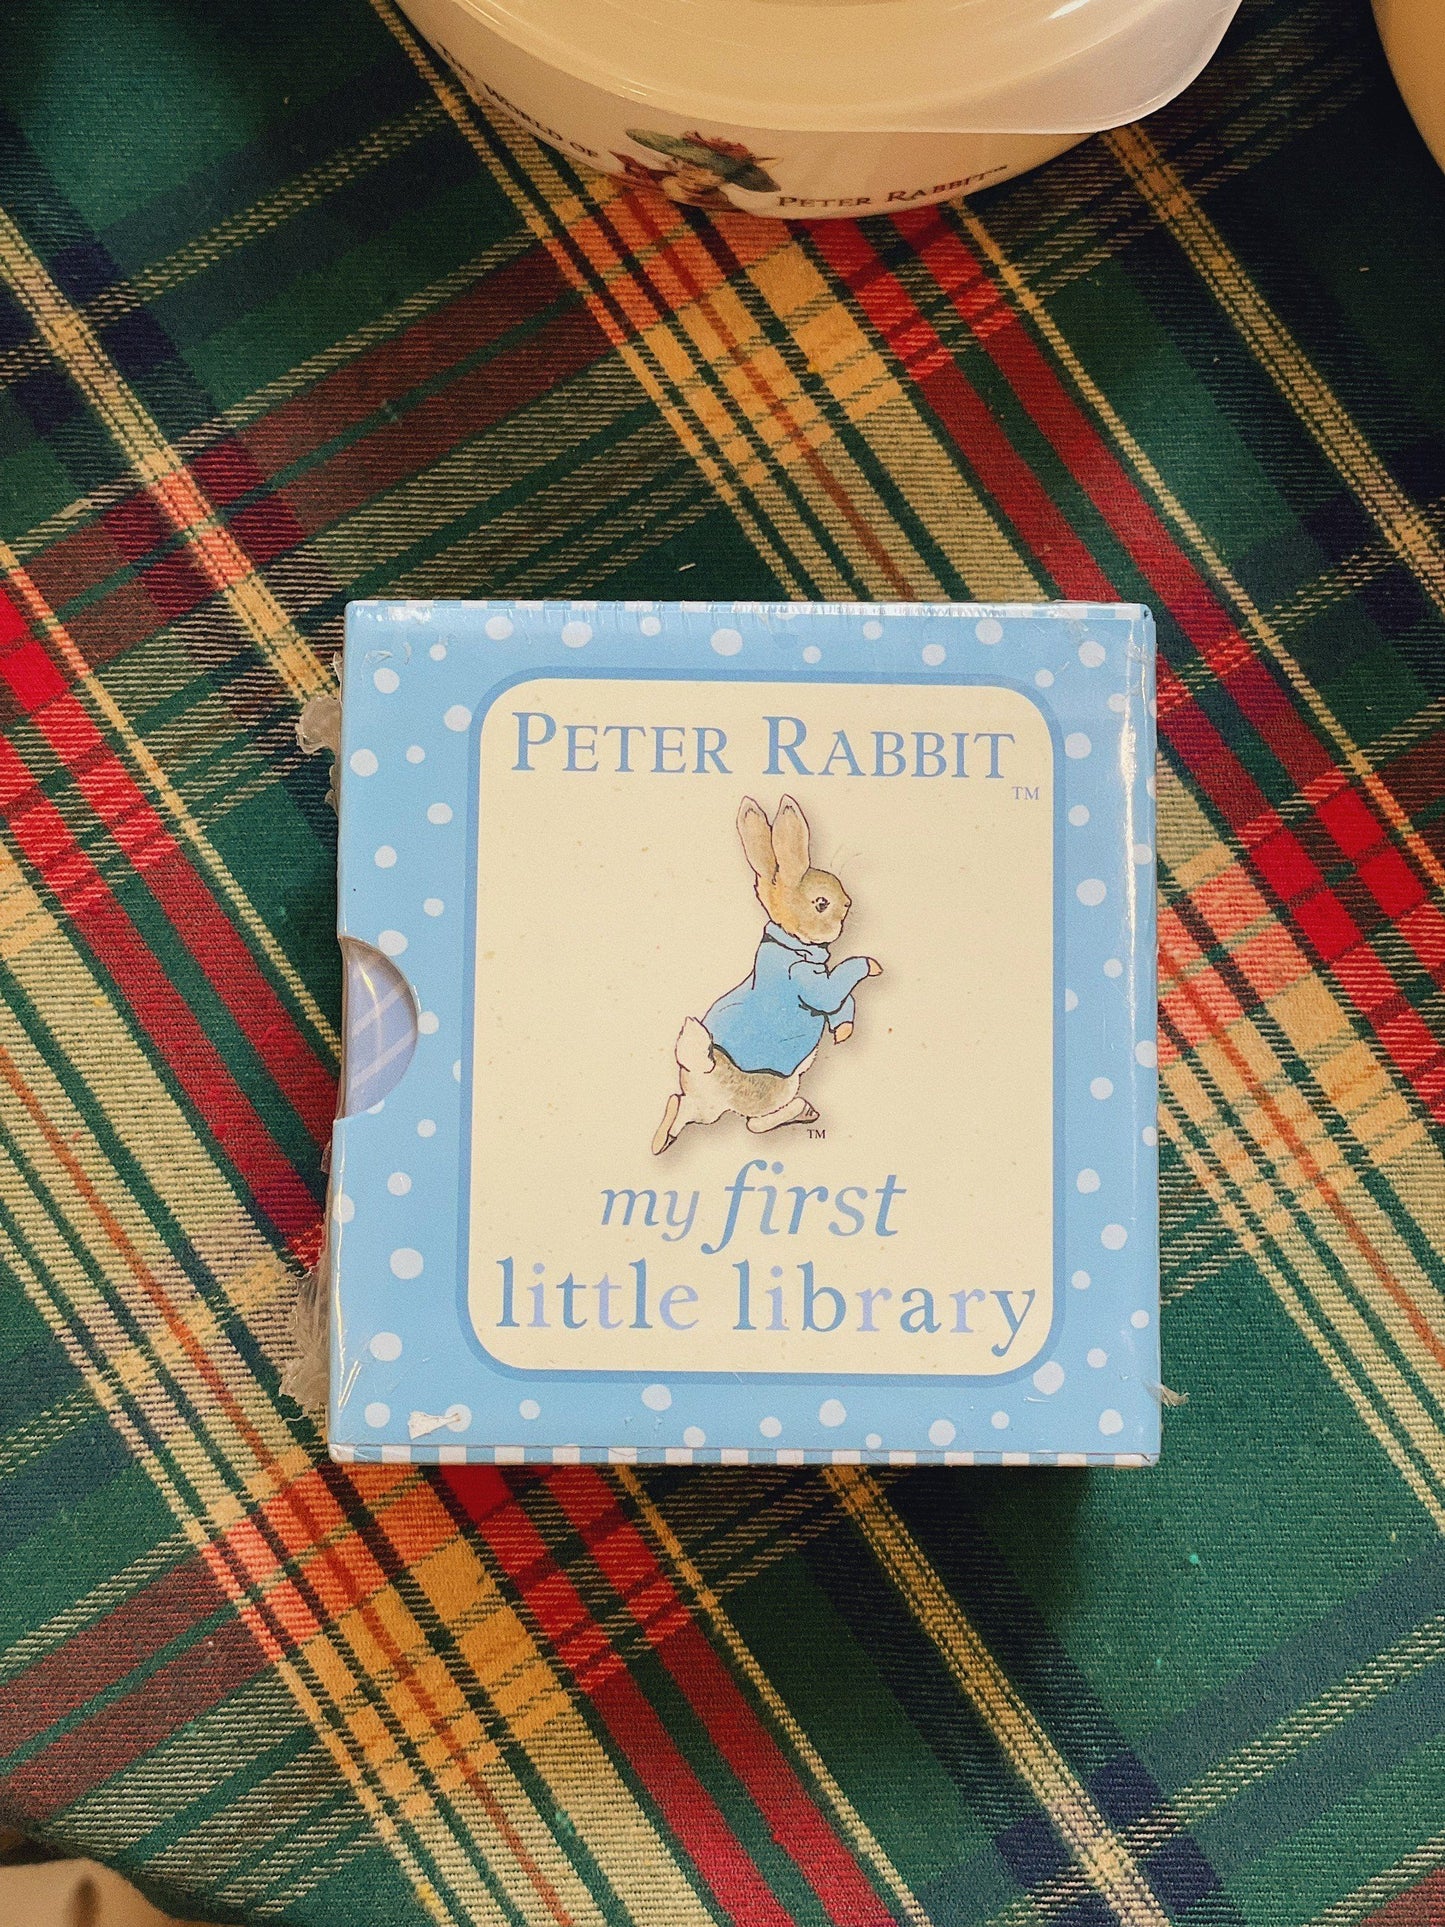 Sách Peter Rabbit xinh xắn ✨